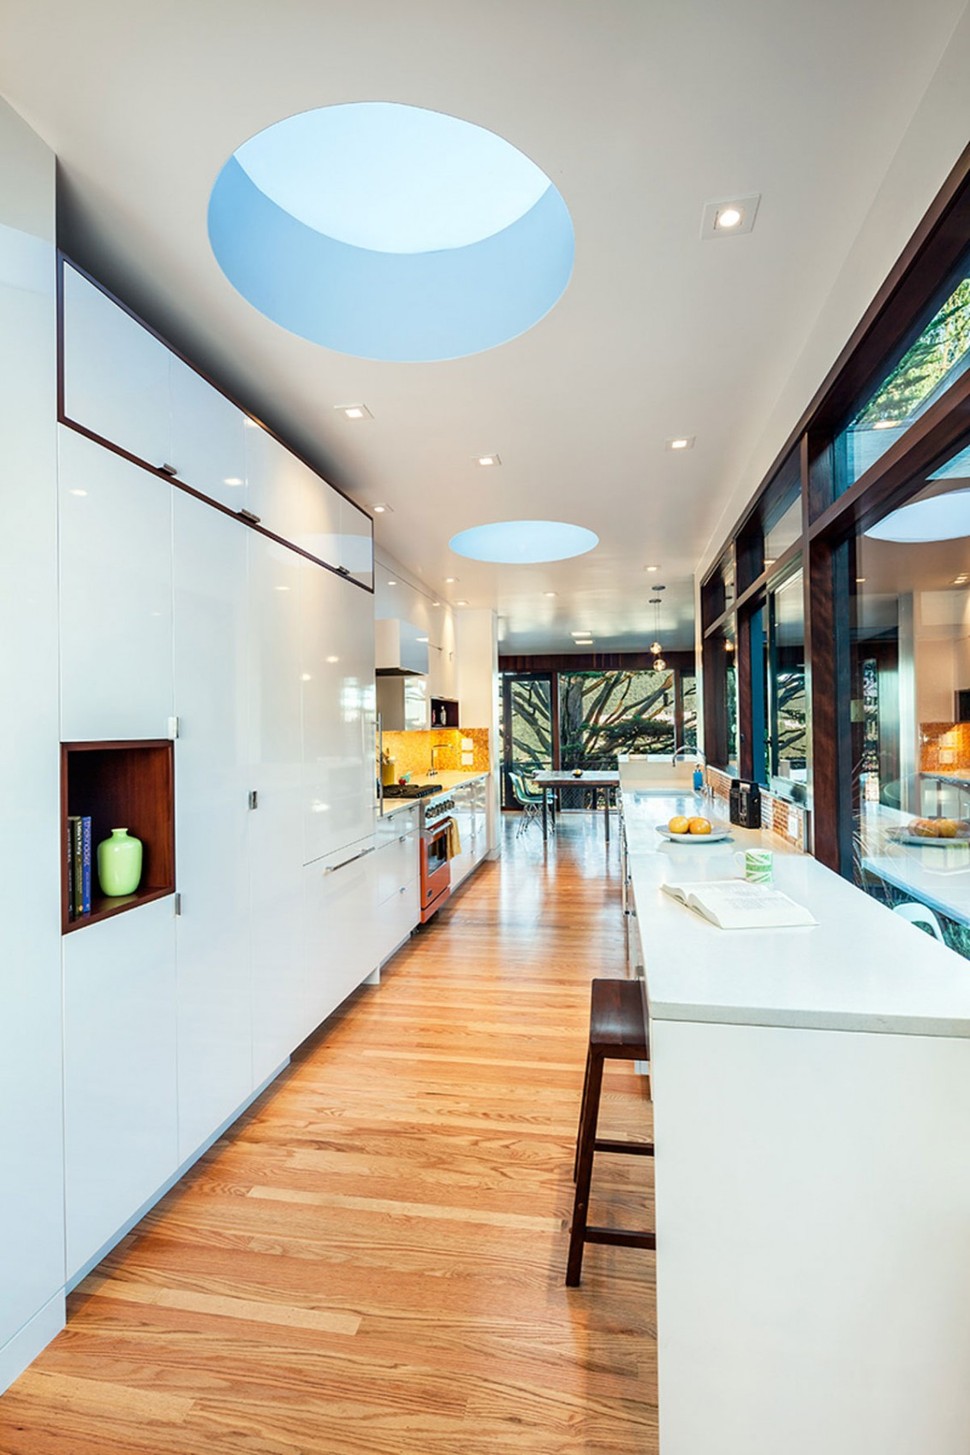 new-kitchen-addition-opens-up-private-below-grade-courtyard-6-kitchen.jpg